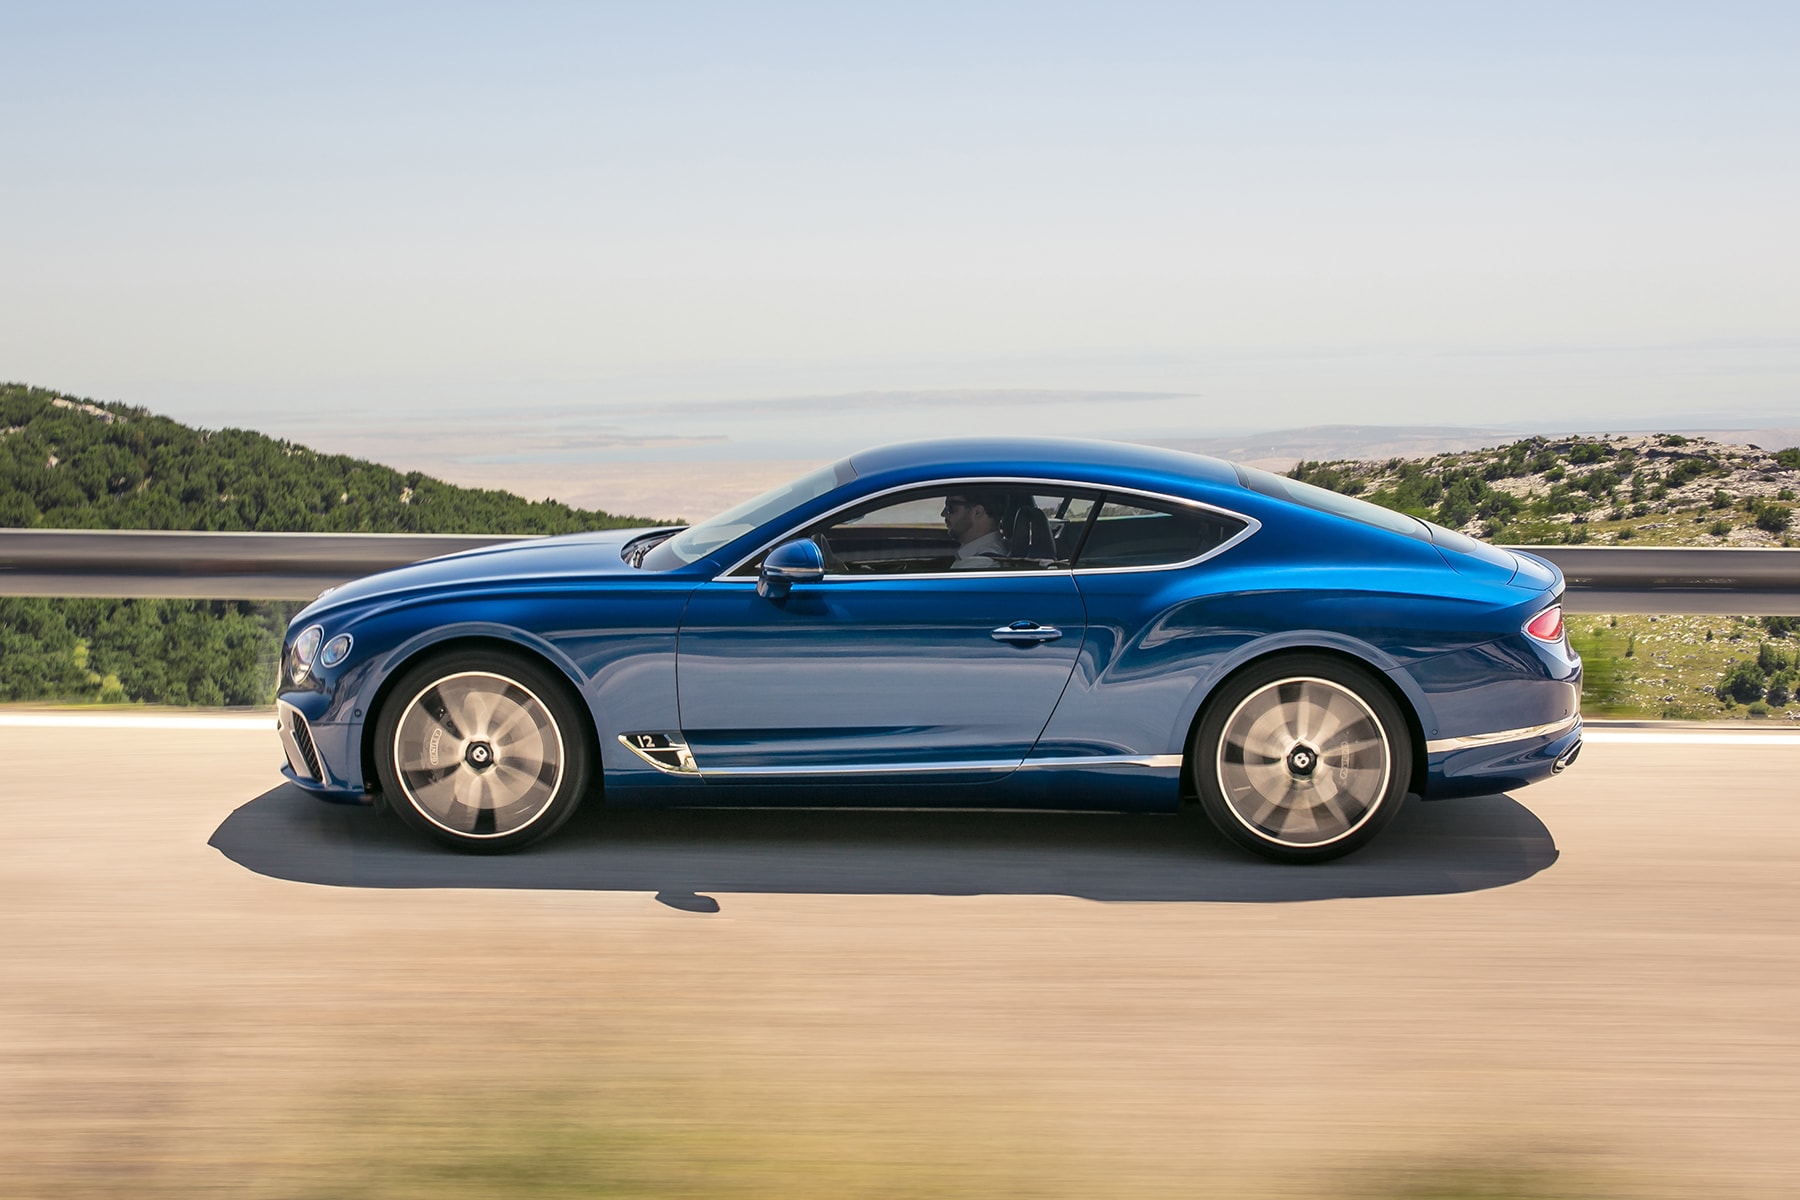 2019 年式樣 Bentley Continental GT W12 豪華轎車澎湃登場